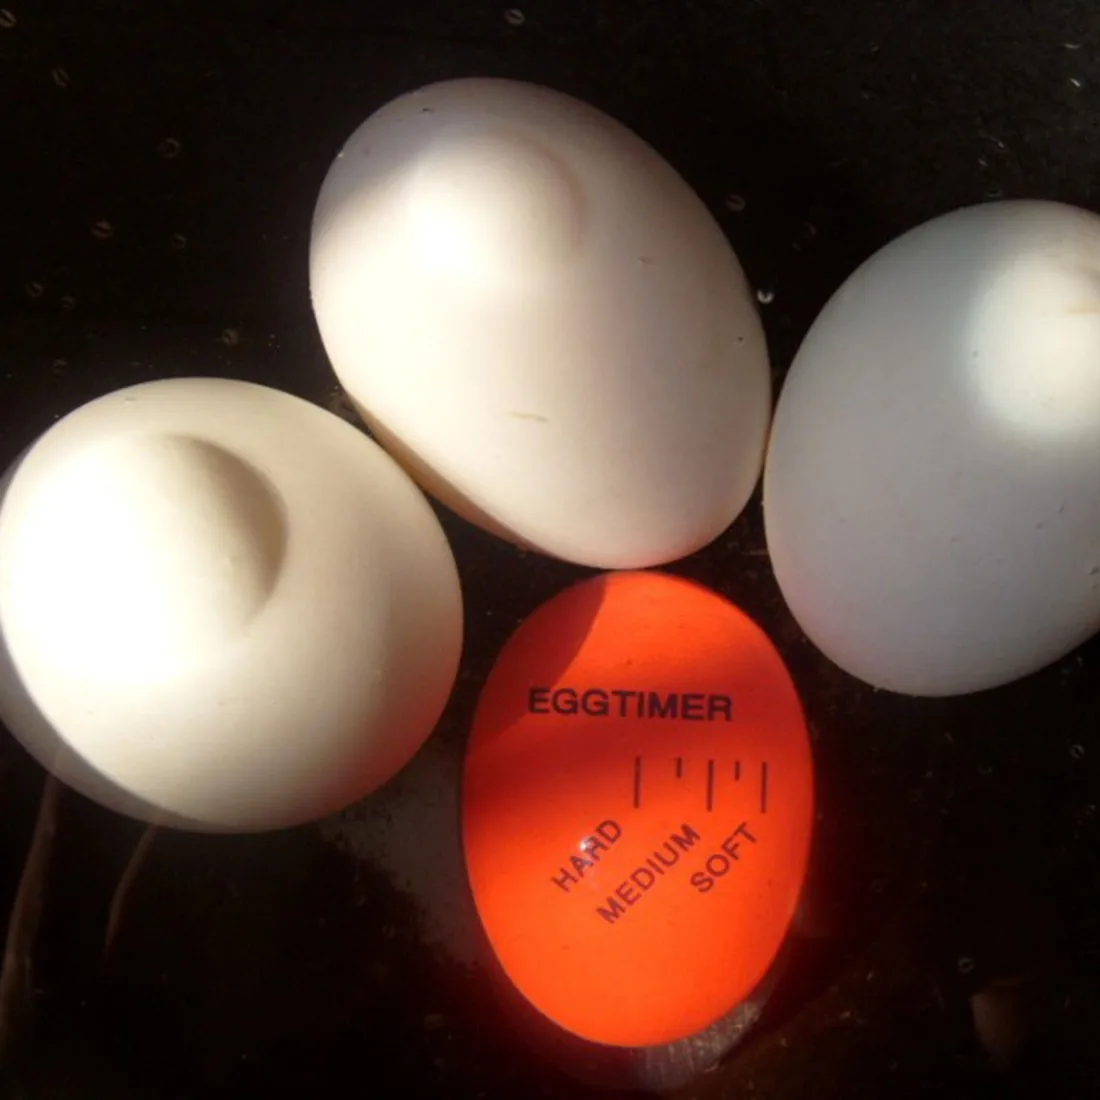 Горячий 1 шт. яйцо идеальный цвет таймер с изменяющимся вкусным мягким твердым вареным яйцом приготовления пищи кухня экологически чистый